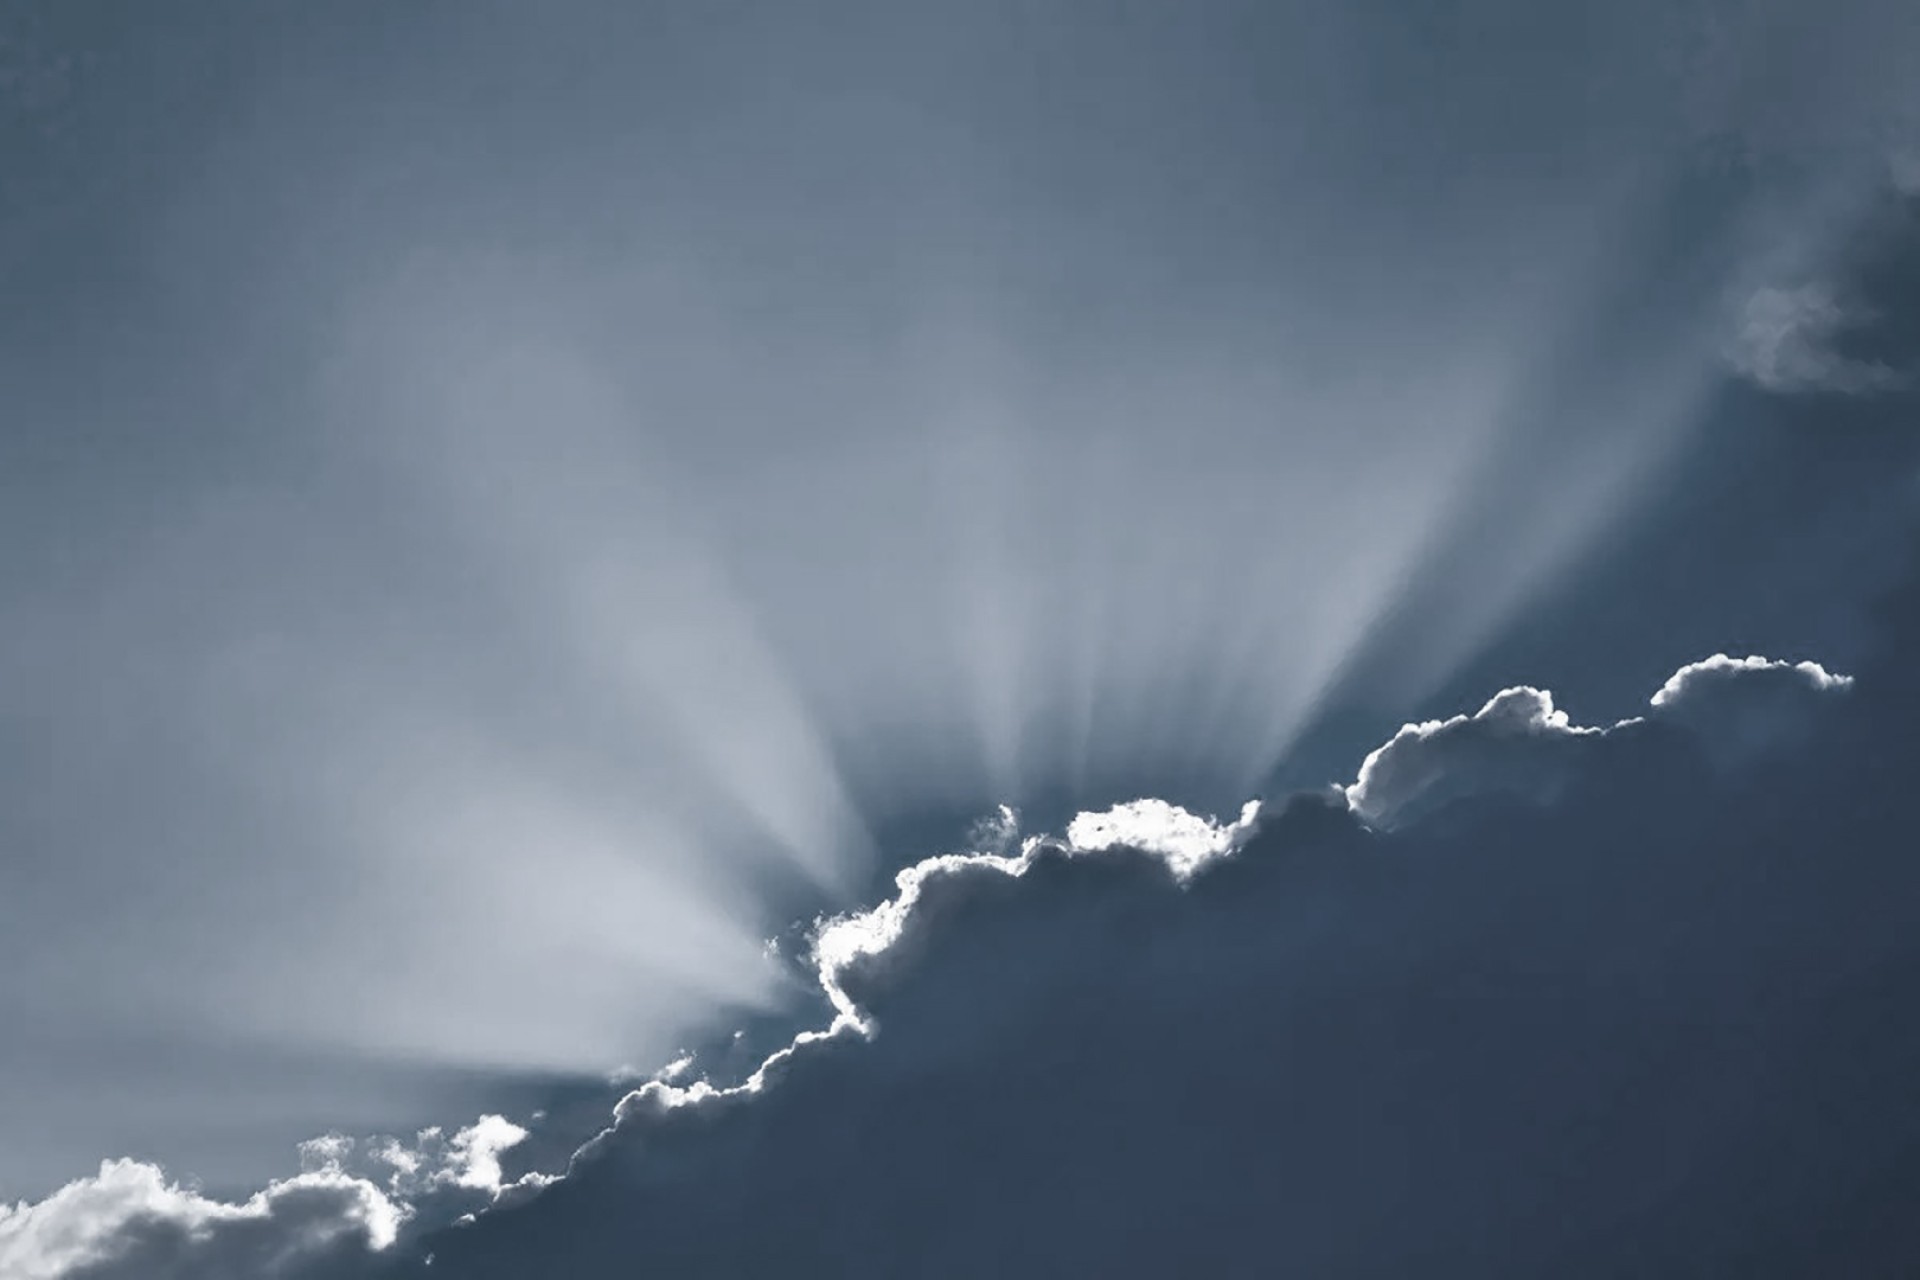 La lineatura argentea creata dalla luce del sole dietro le nuvole, metafora che c' luce anche nei giorni bui